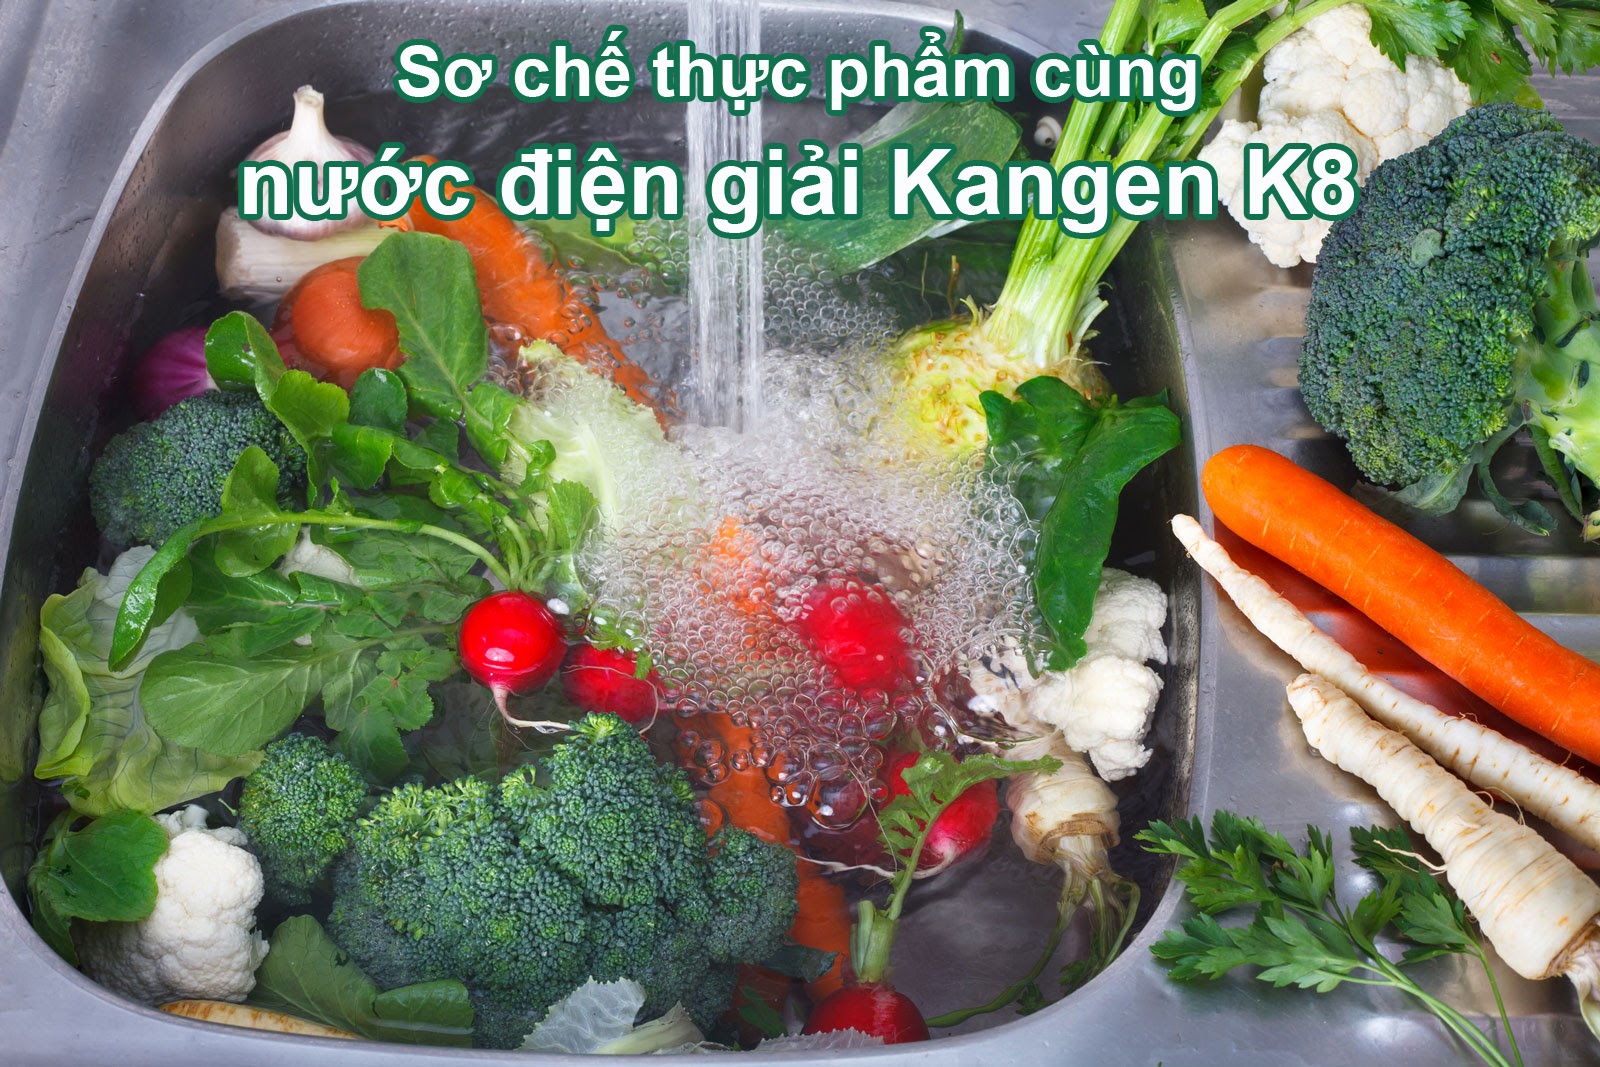 Sơ chế thực phẩm cùng nước Kangen K8